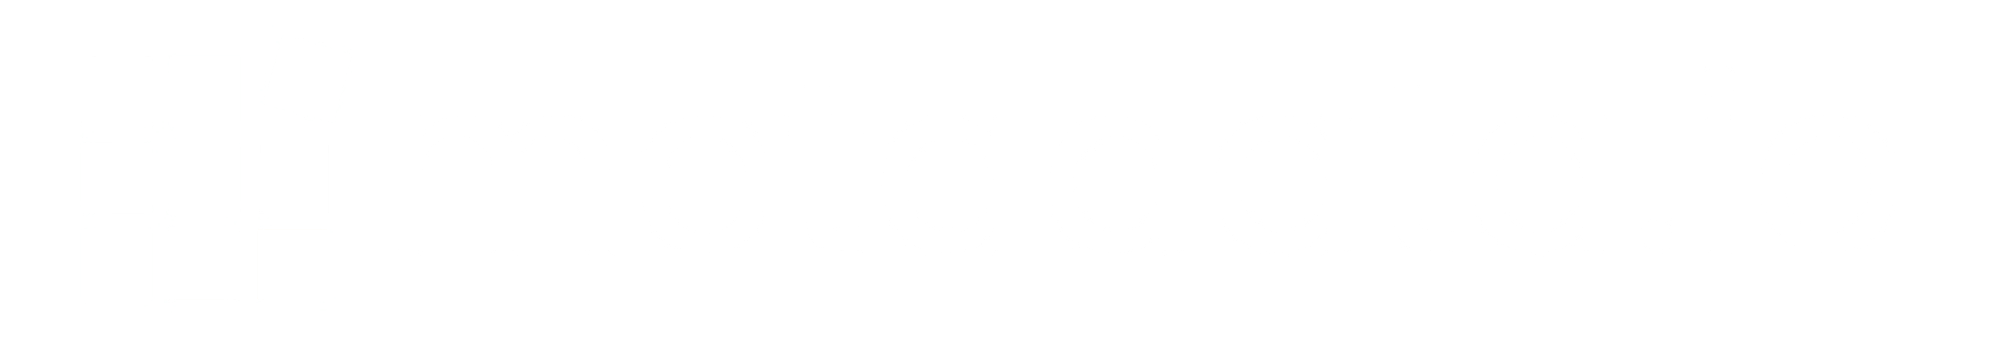 metadataio_logo-white